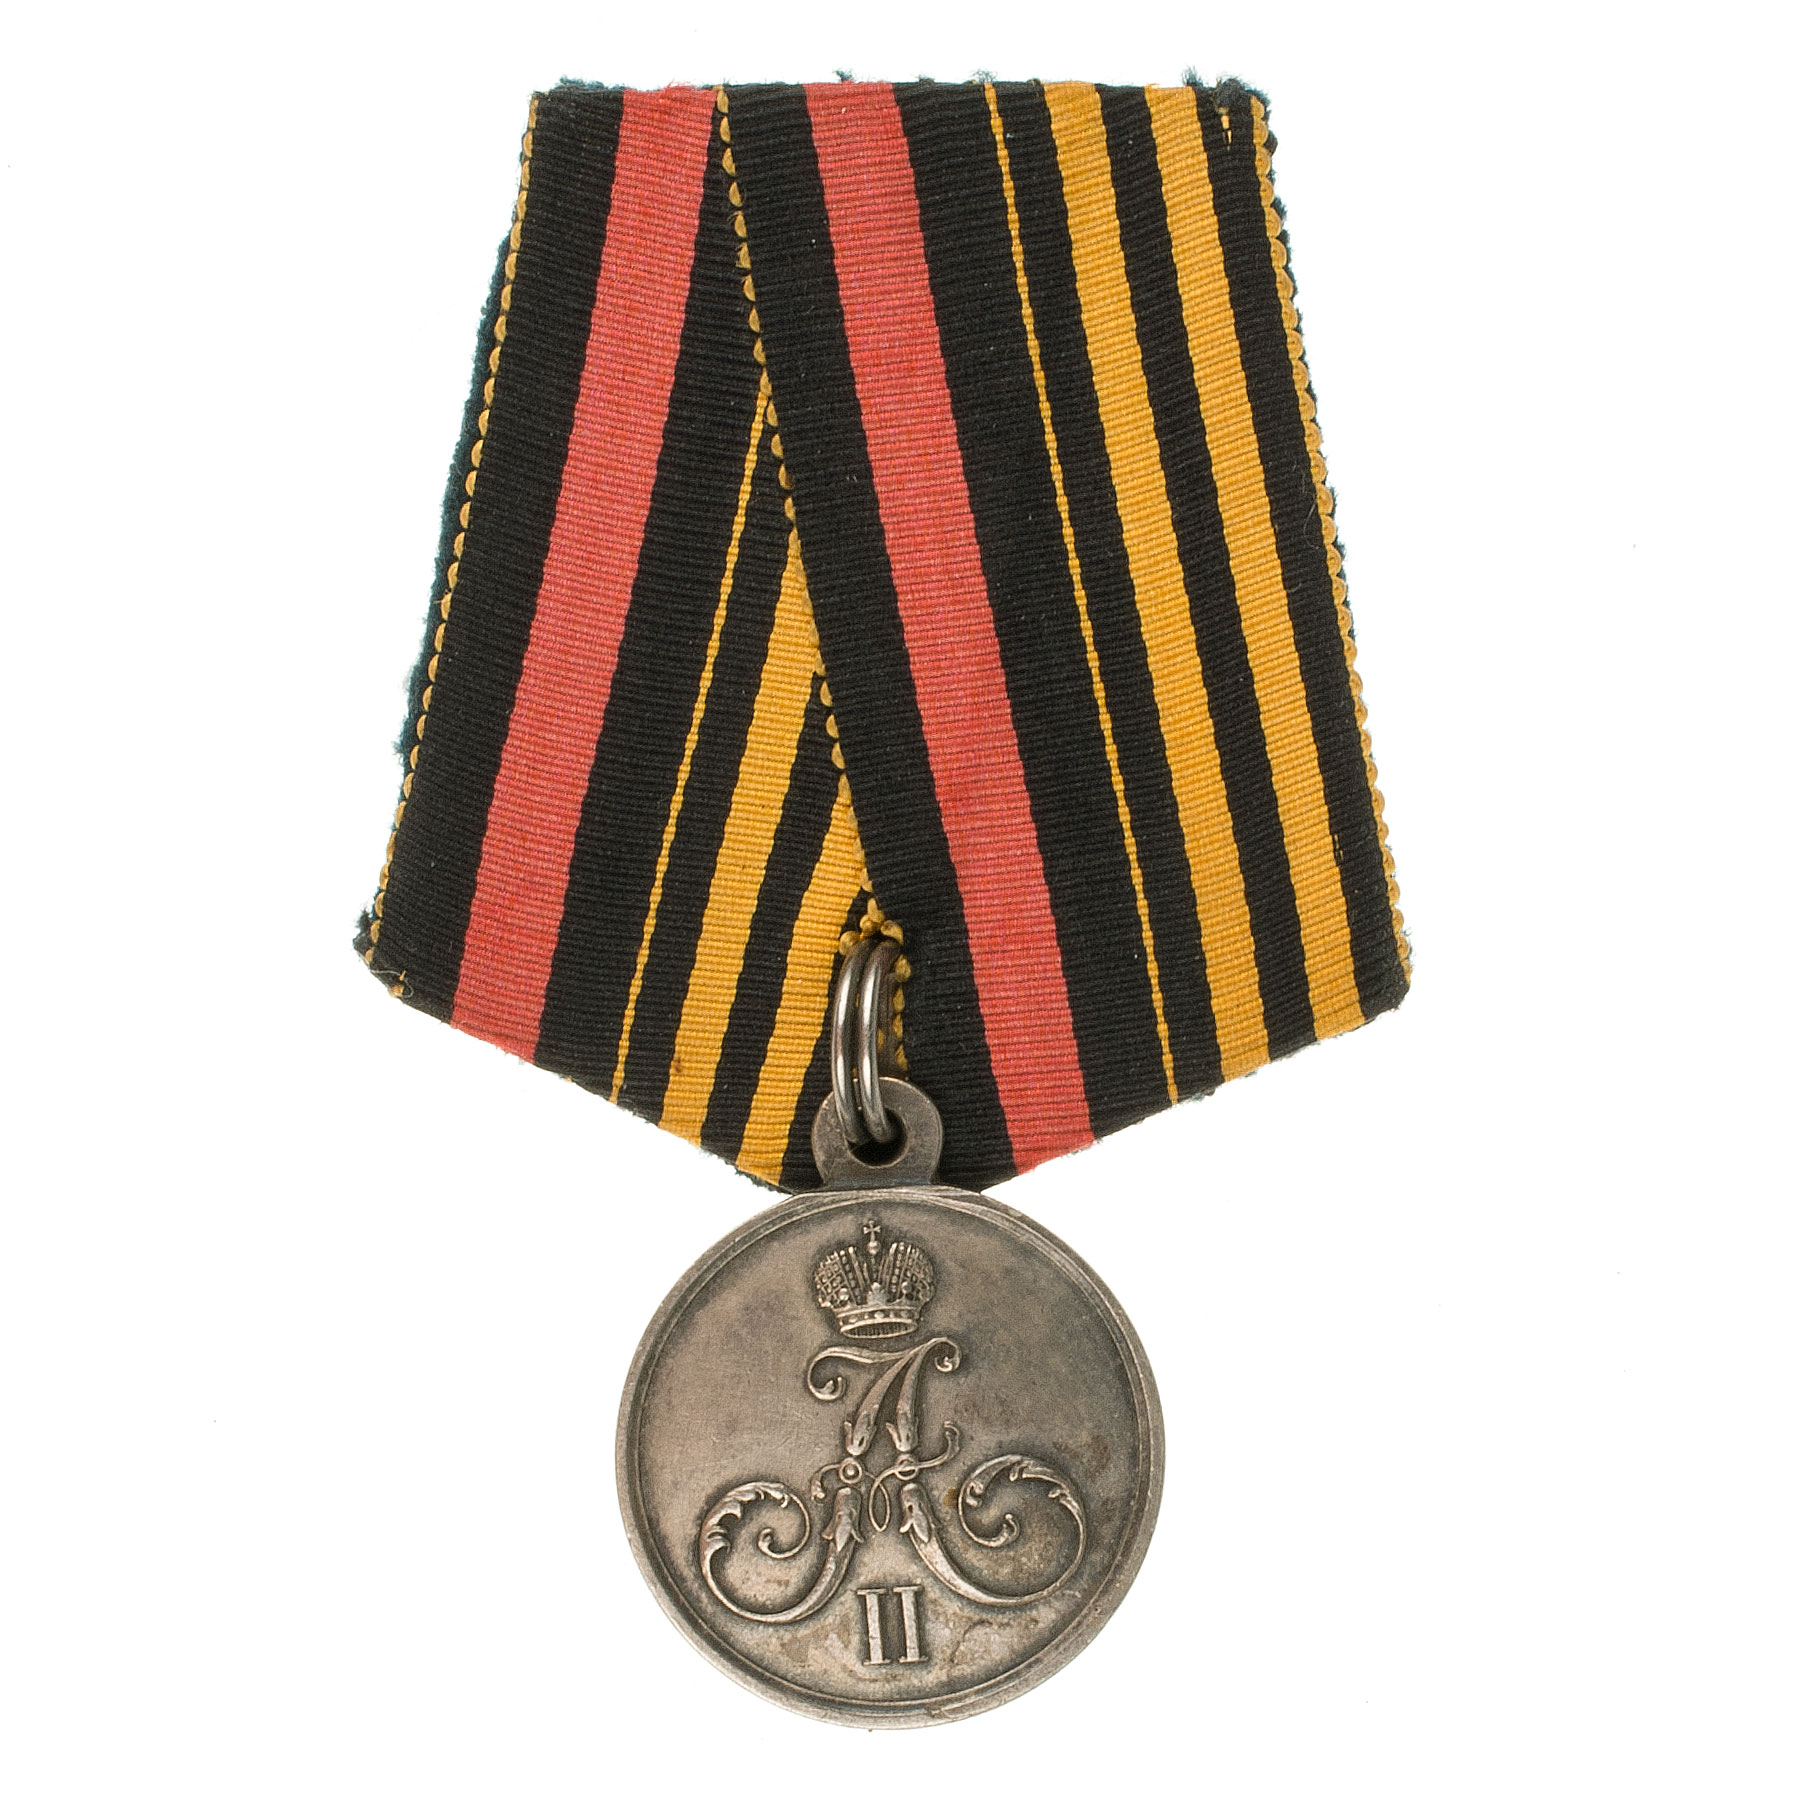 Медаль "За Хивинский поход 1873г" на колодке с совмещёнными лентами орденов Св. Георгия и Св. Владимира.